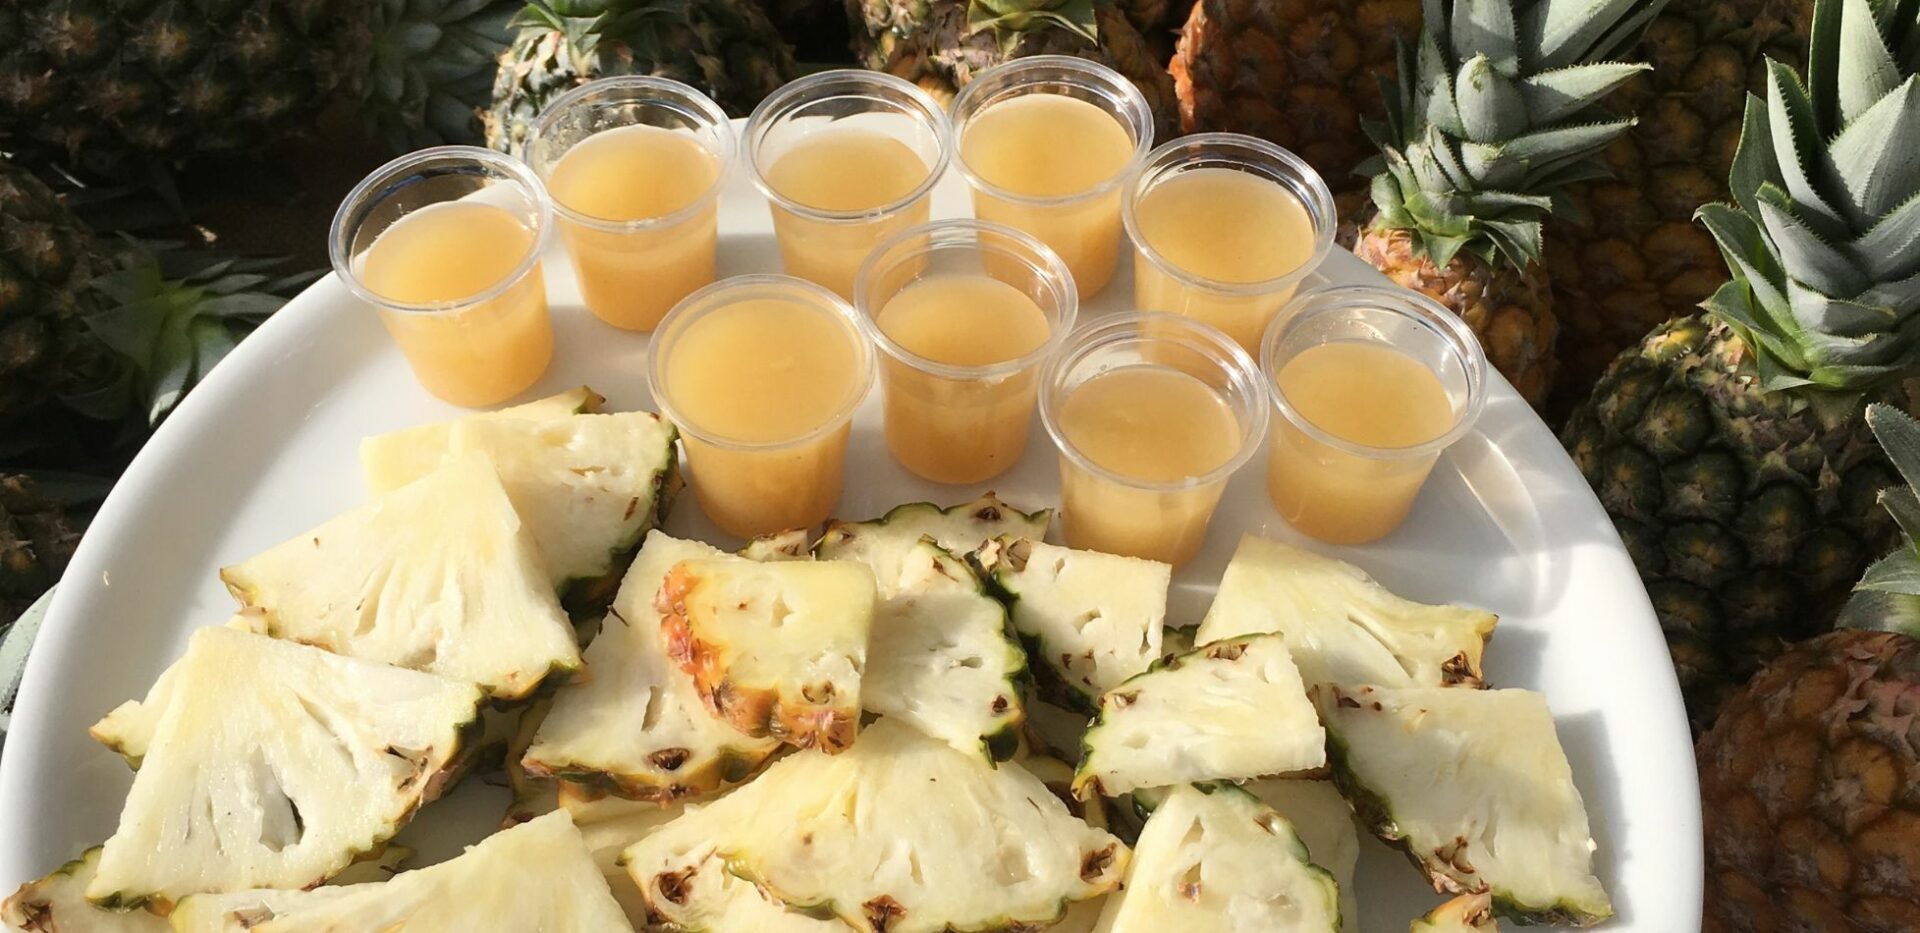 Ananas bouteille coupé en tranche et sous forme de jus